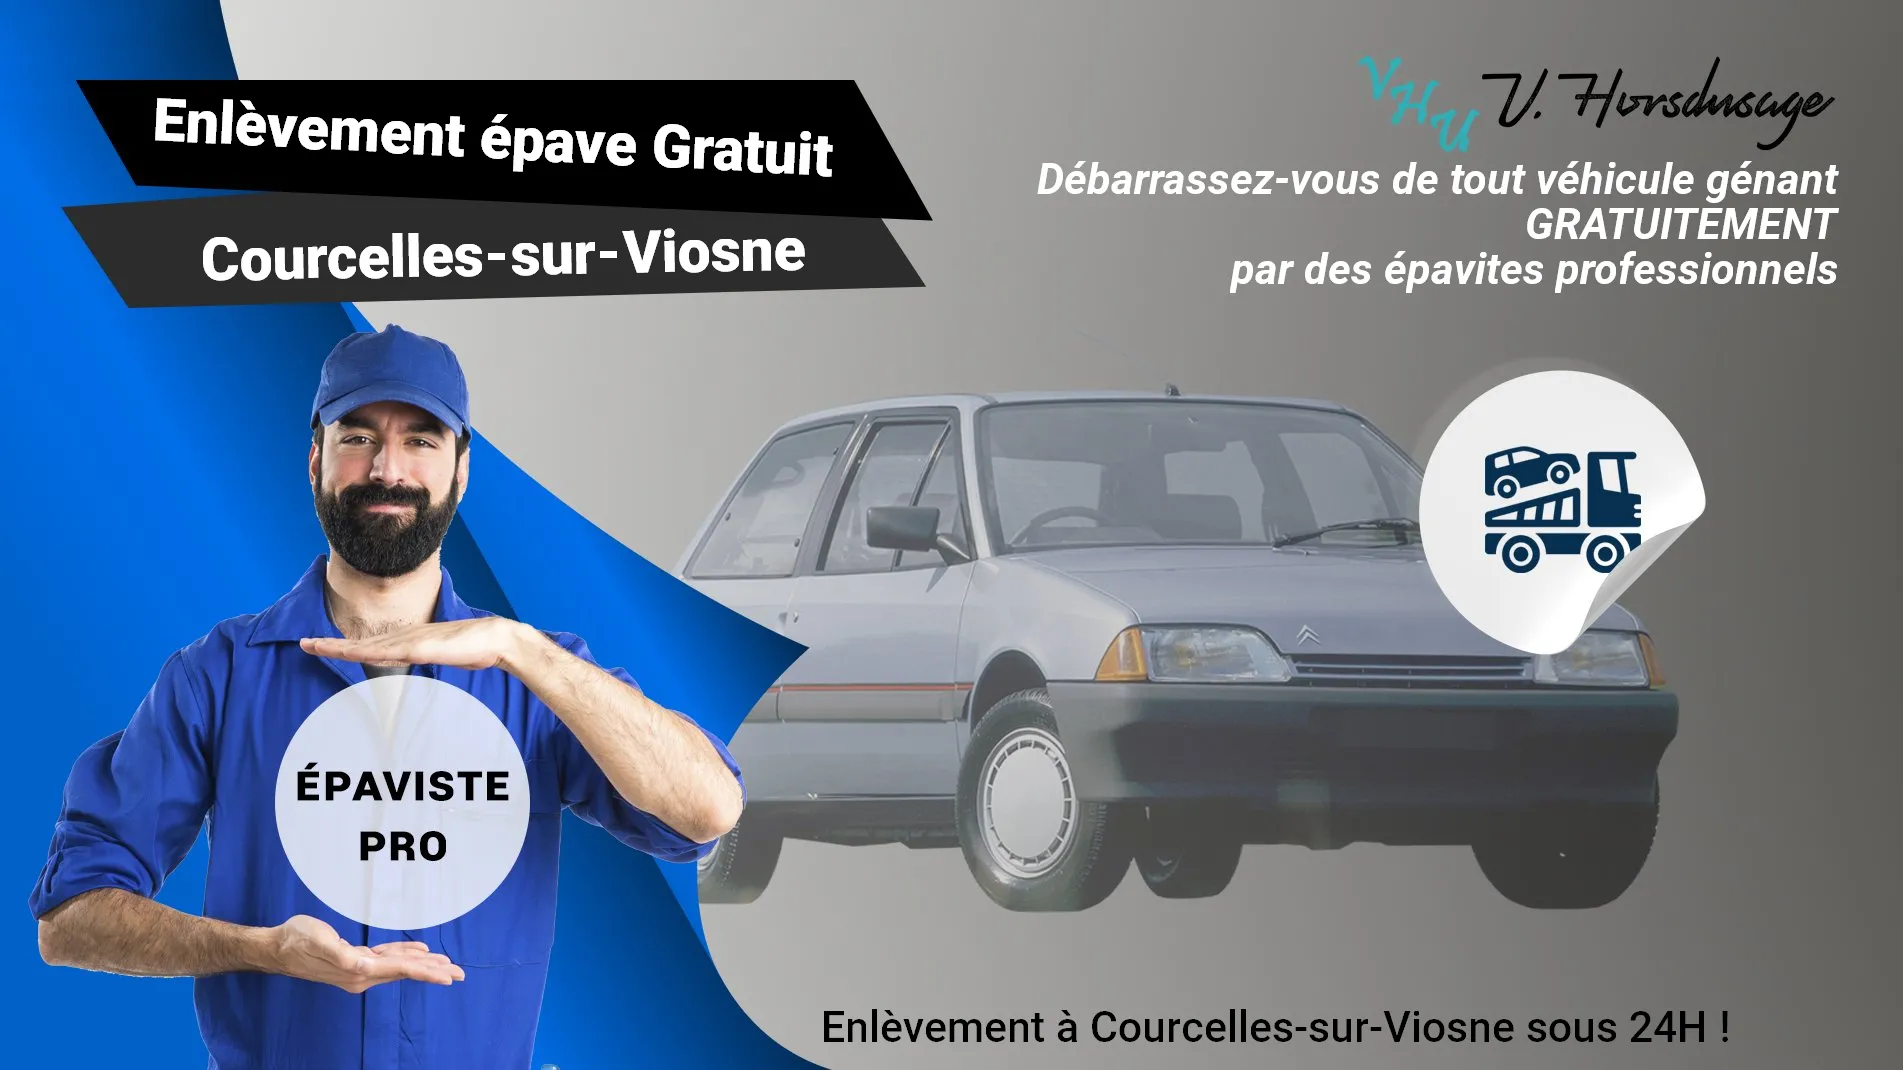 Pour un enlèvement gratuit à Courcelles-sur-Viosne, contactez nos épavistes agréé VHU